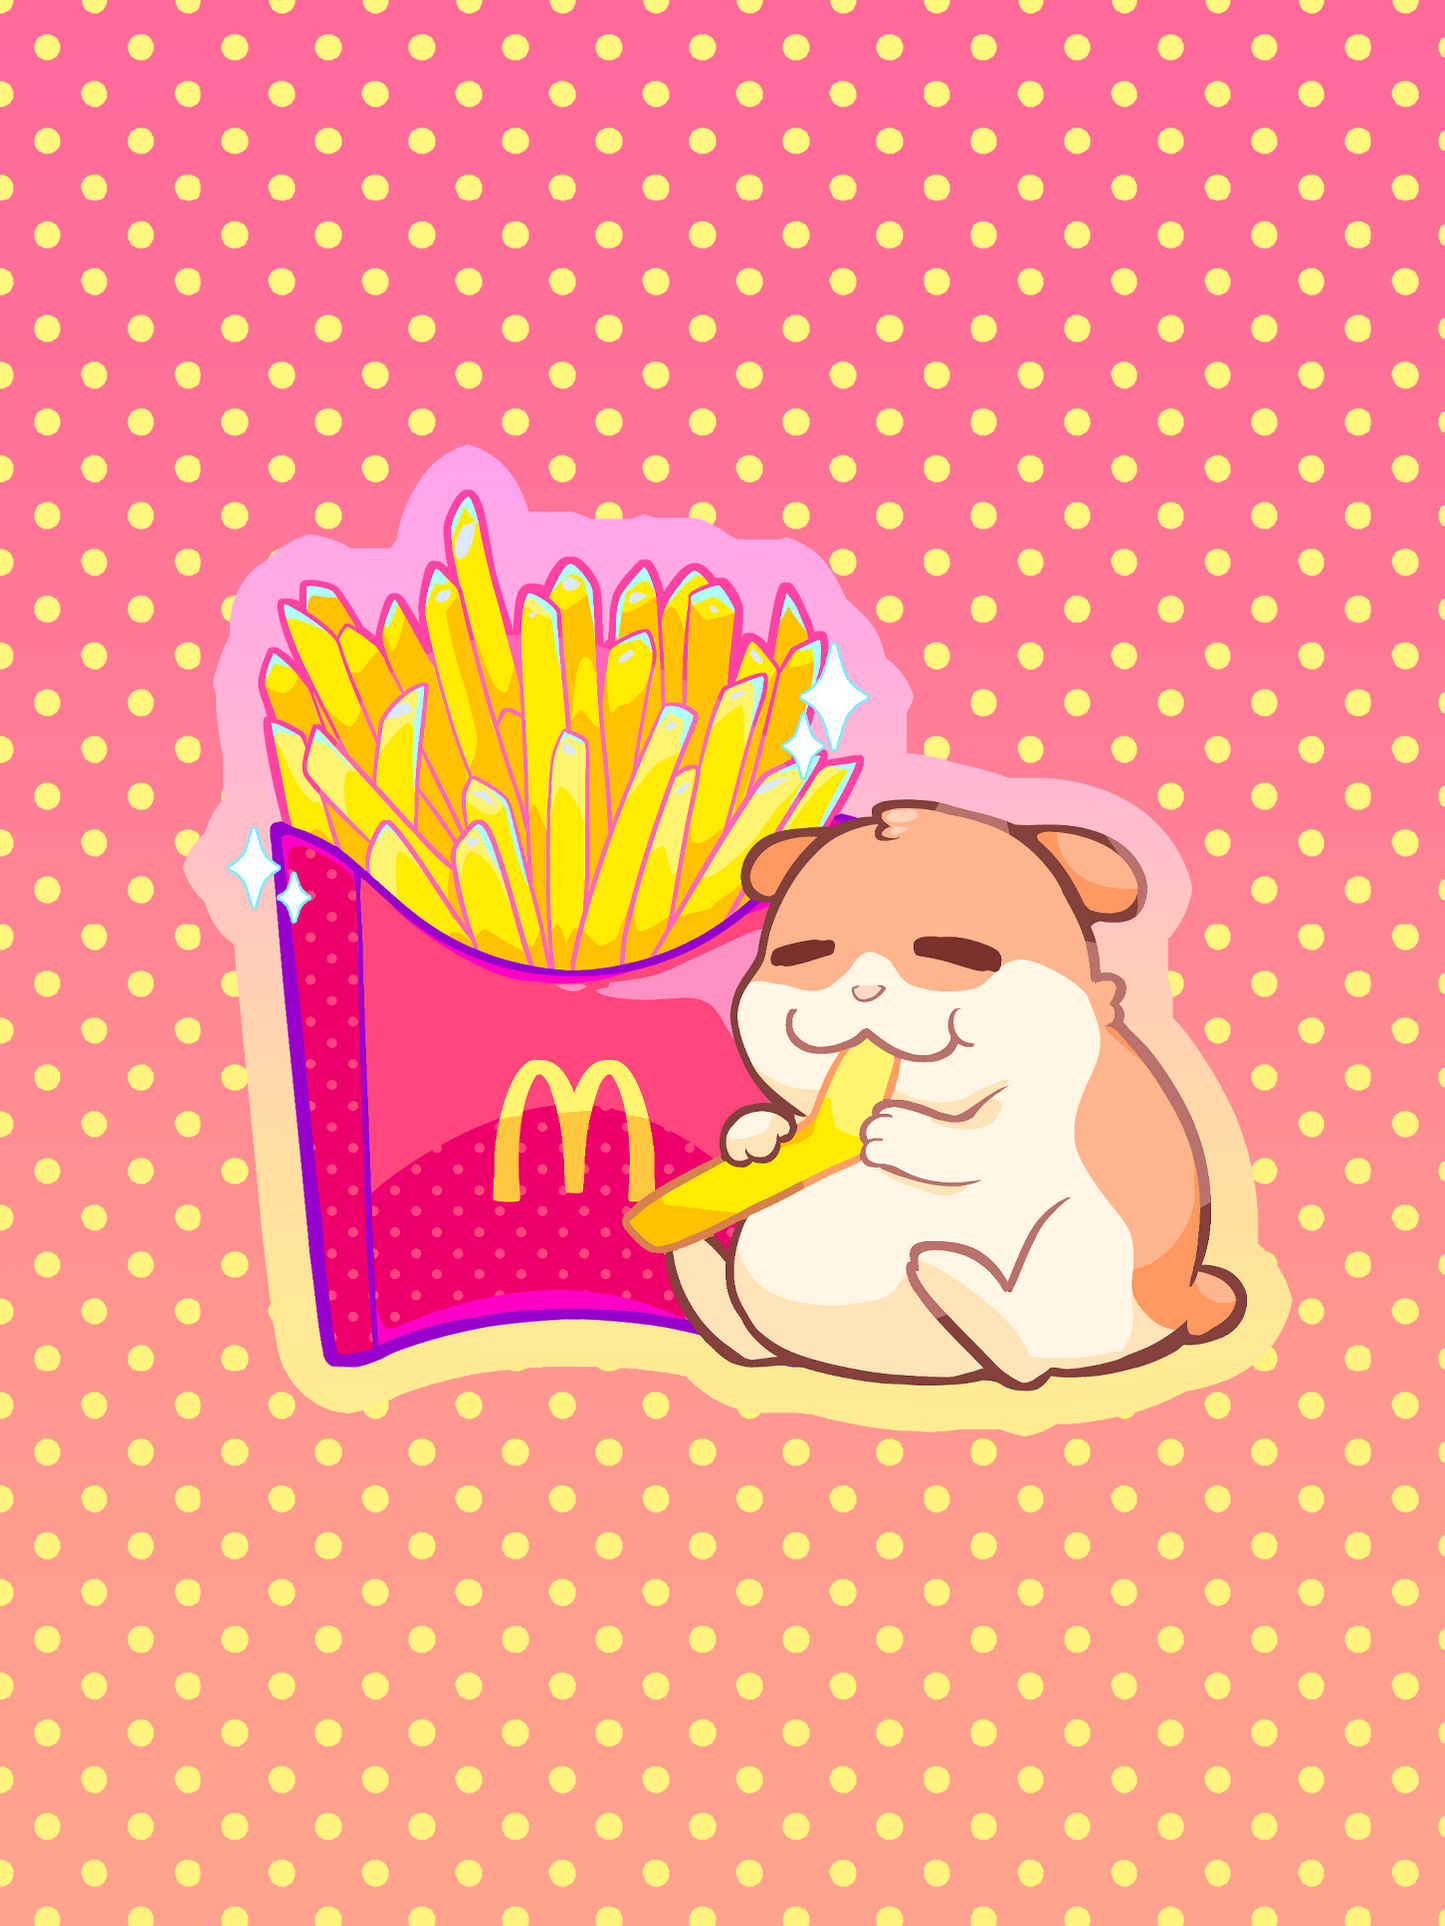 Maccas Chips! - Sticker